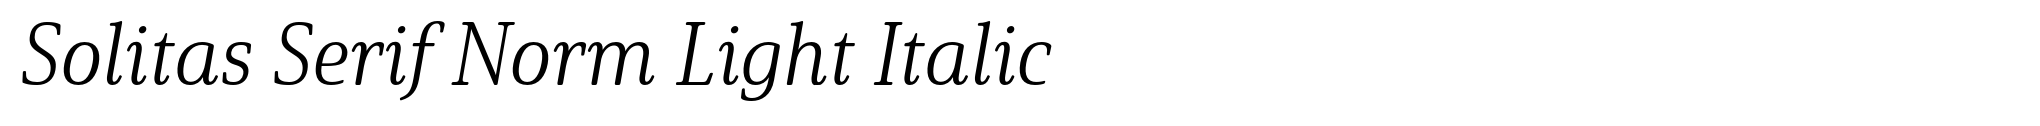 Solitas Serif Norm Light Italic image